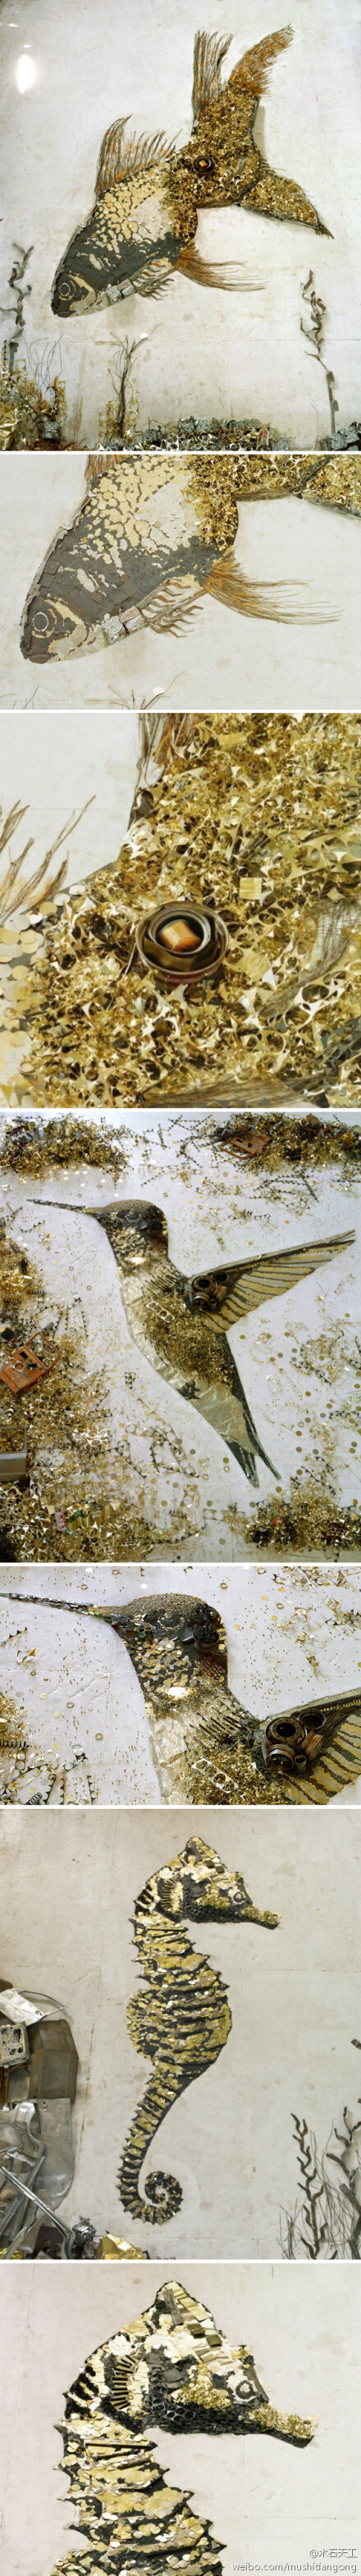 【艺术】巴西艺术家 Vik Muniz 利用废弃金属创作的装饰艺术，金鱼、蜂鸟和海马等图案，栩栩如生，金光灿灿，仿佛衣服上做工精致的高级刺绣。 #装置艺术# #旧物改造#